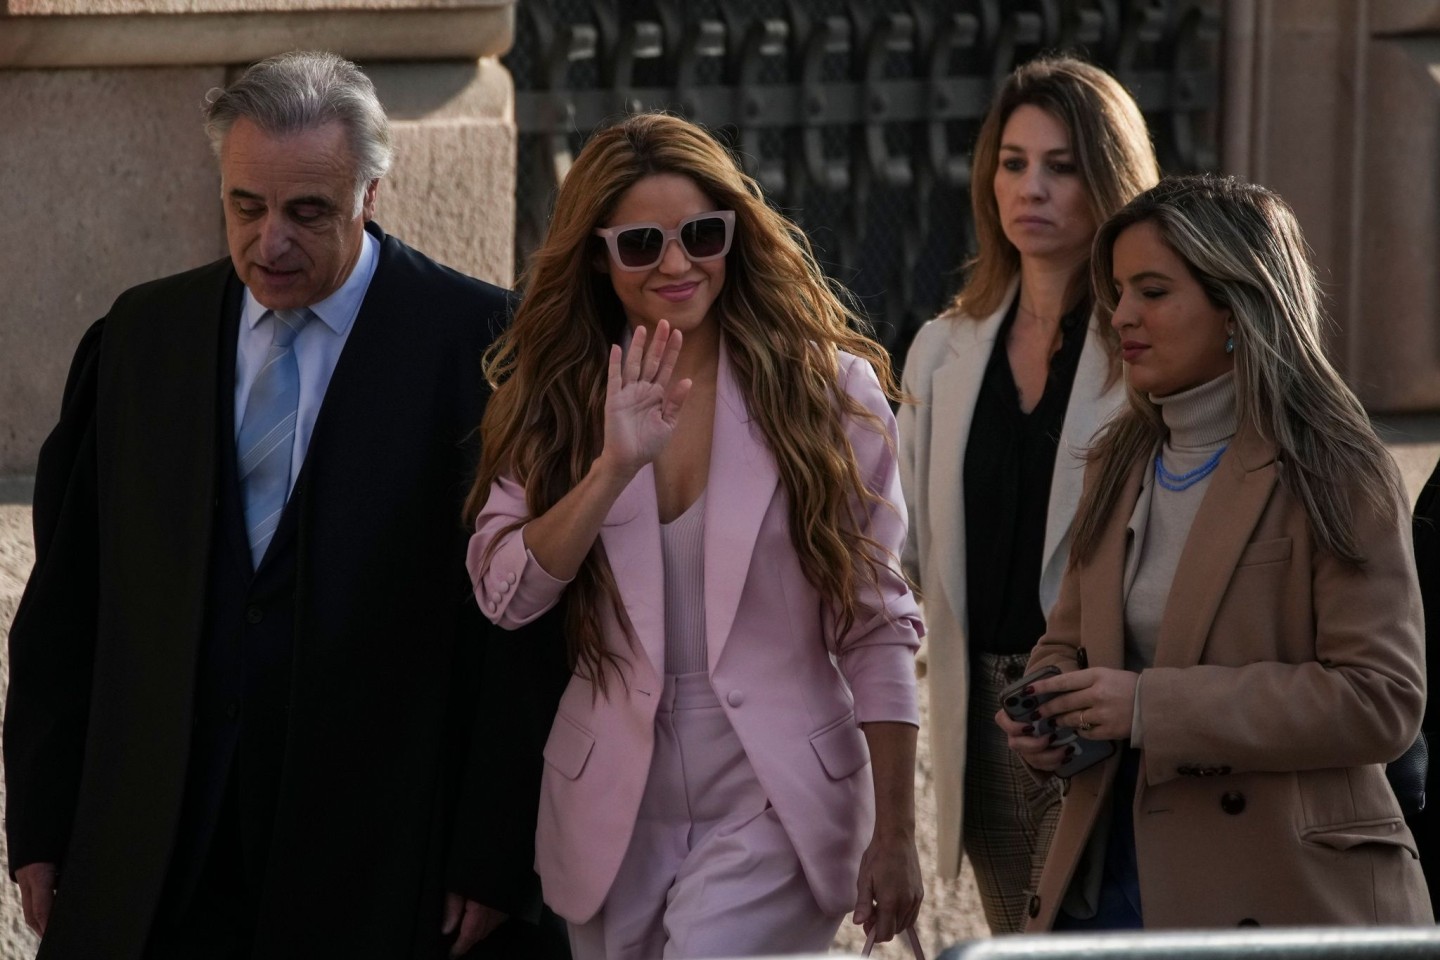 Die Sängerin Shakira (M) kommt am Gericht in Barcelona an. Die 46-Jährige bekam eine dreijährige Haftstrafe aufgebrummt, die sie aber als nicht vorbestrafte Person nicht antreten muss.